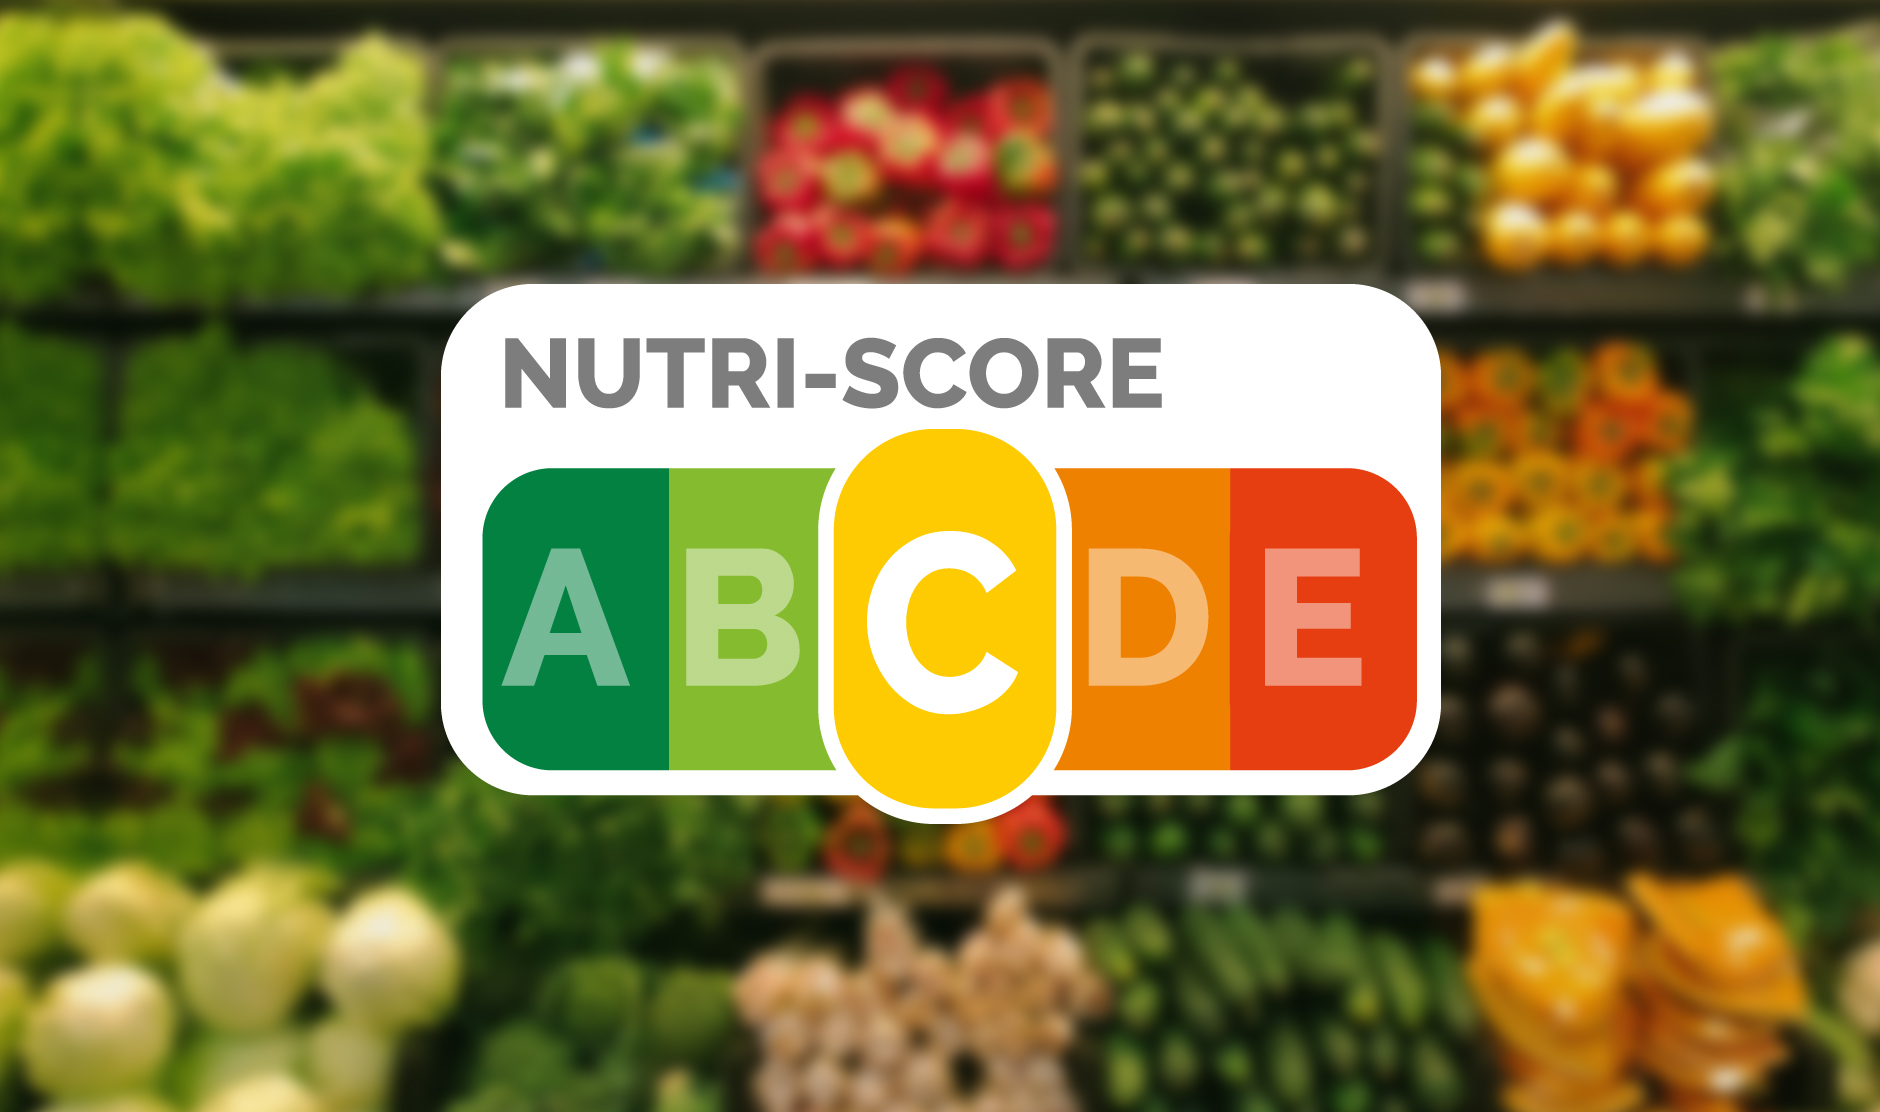 ¿Qué es el etiquetado nutricional? Ejemplos y aplicaciones útiles